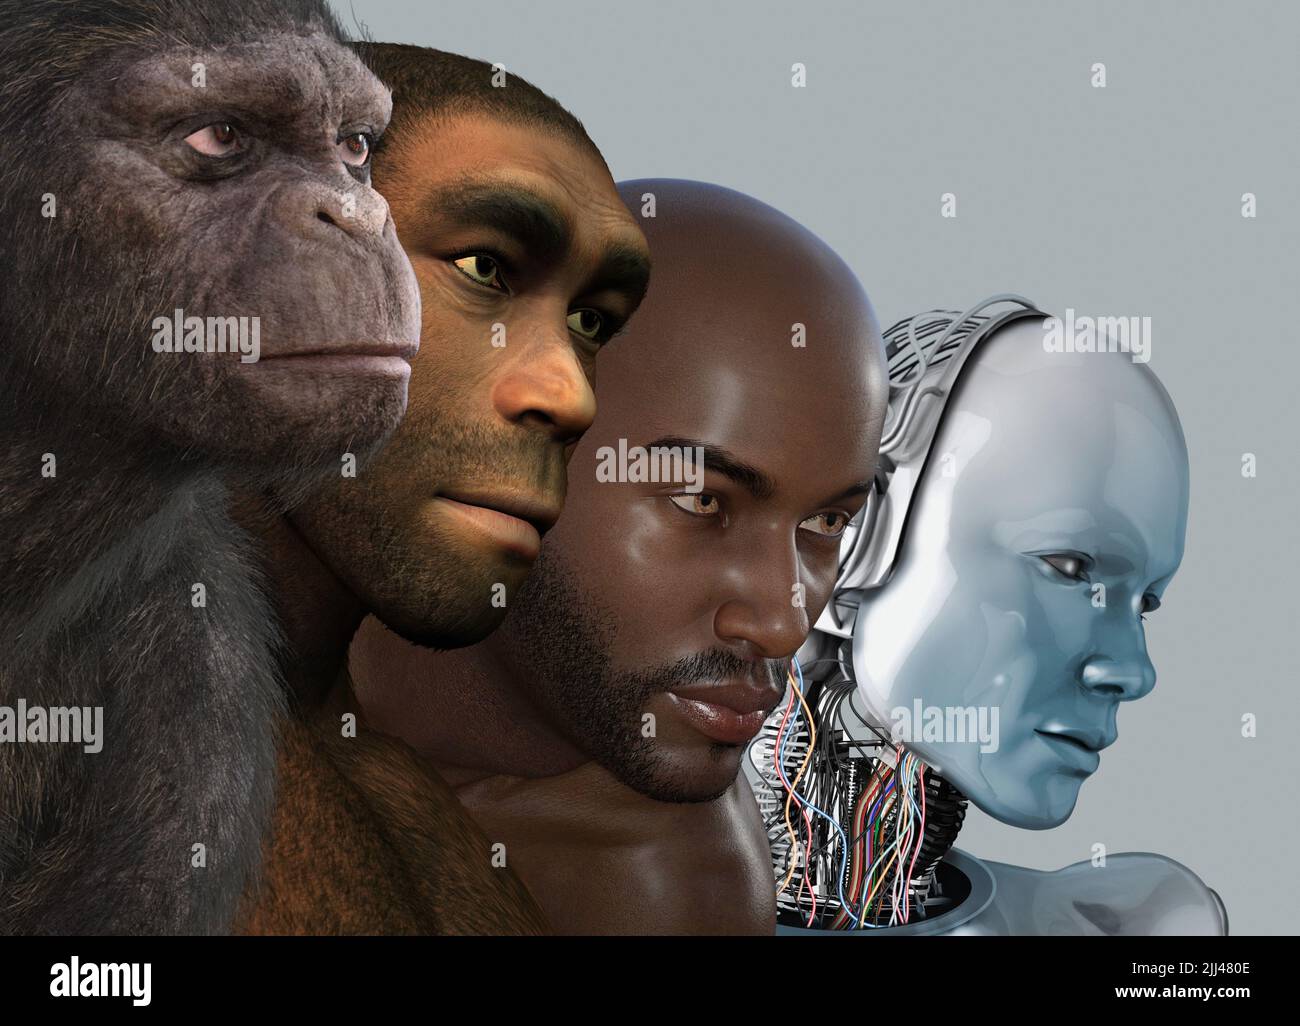 Évolution humaine, illustration conceptuelle. Banque D'Images